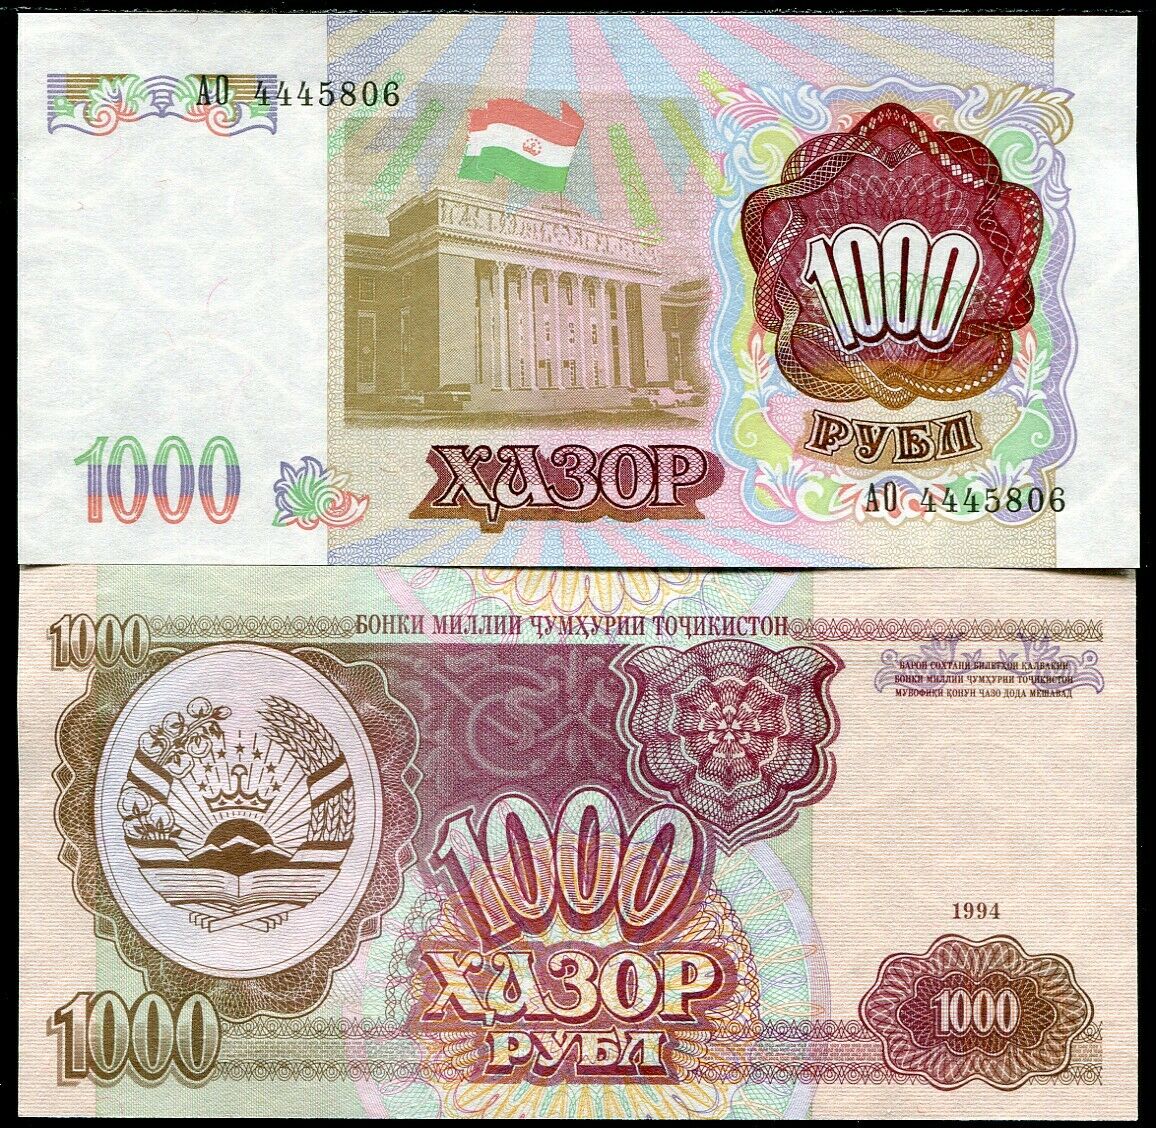 Tajikistan 1000 Rubles 1994 ND 1999 P 9 UNC